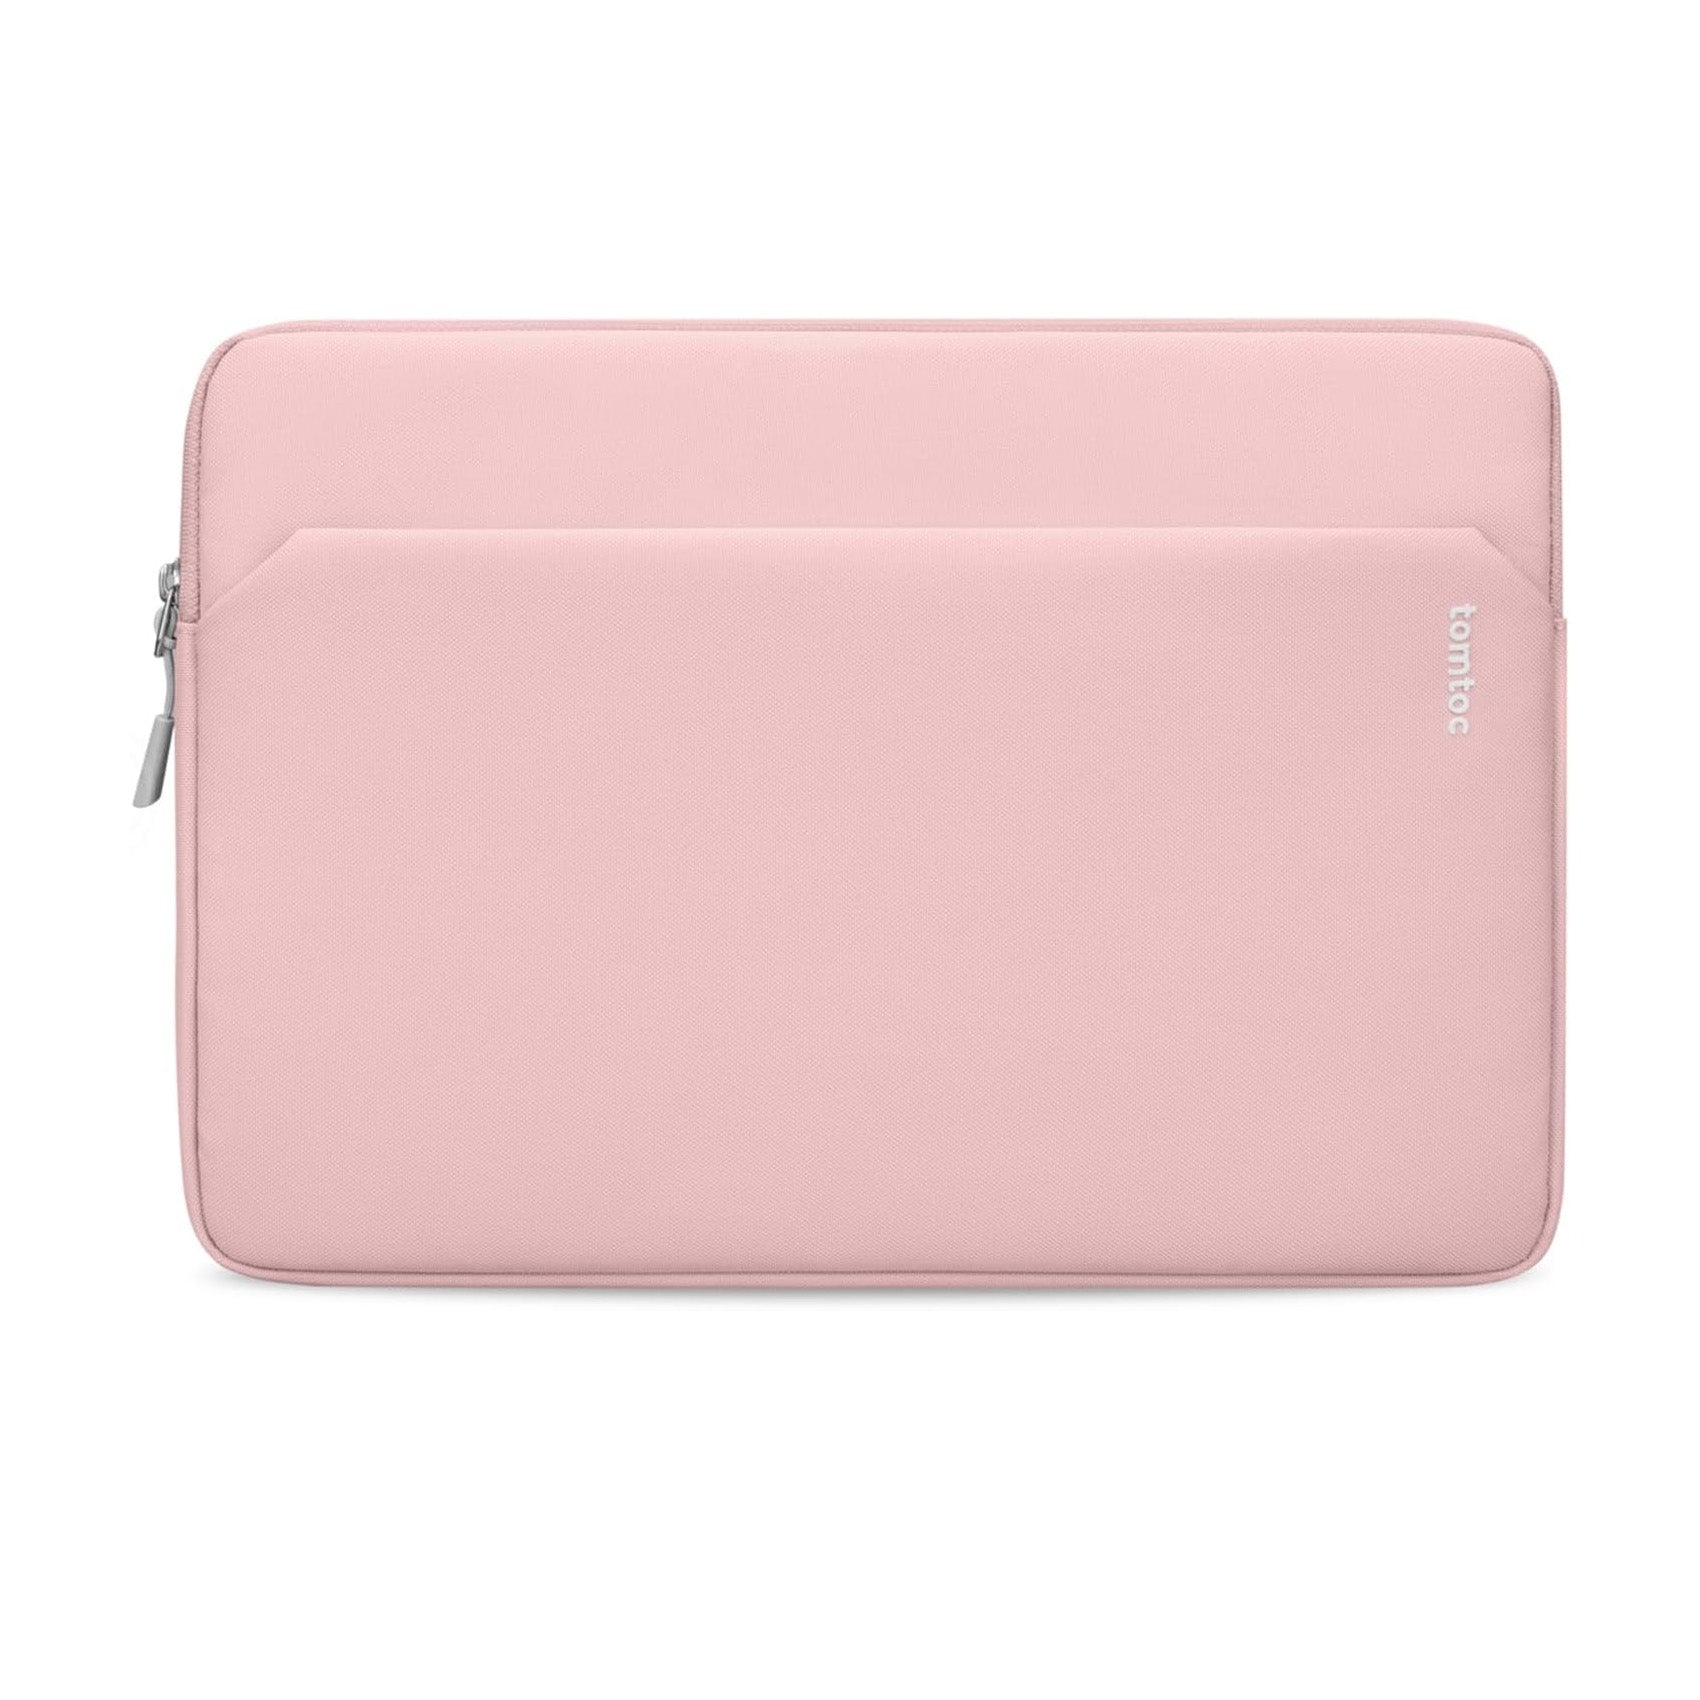 tomtoc 11 Inch Tablet Sleeve Bag - iPad Pro 11 / iPad Air 10.9 / iPad 10.2 - Pink